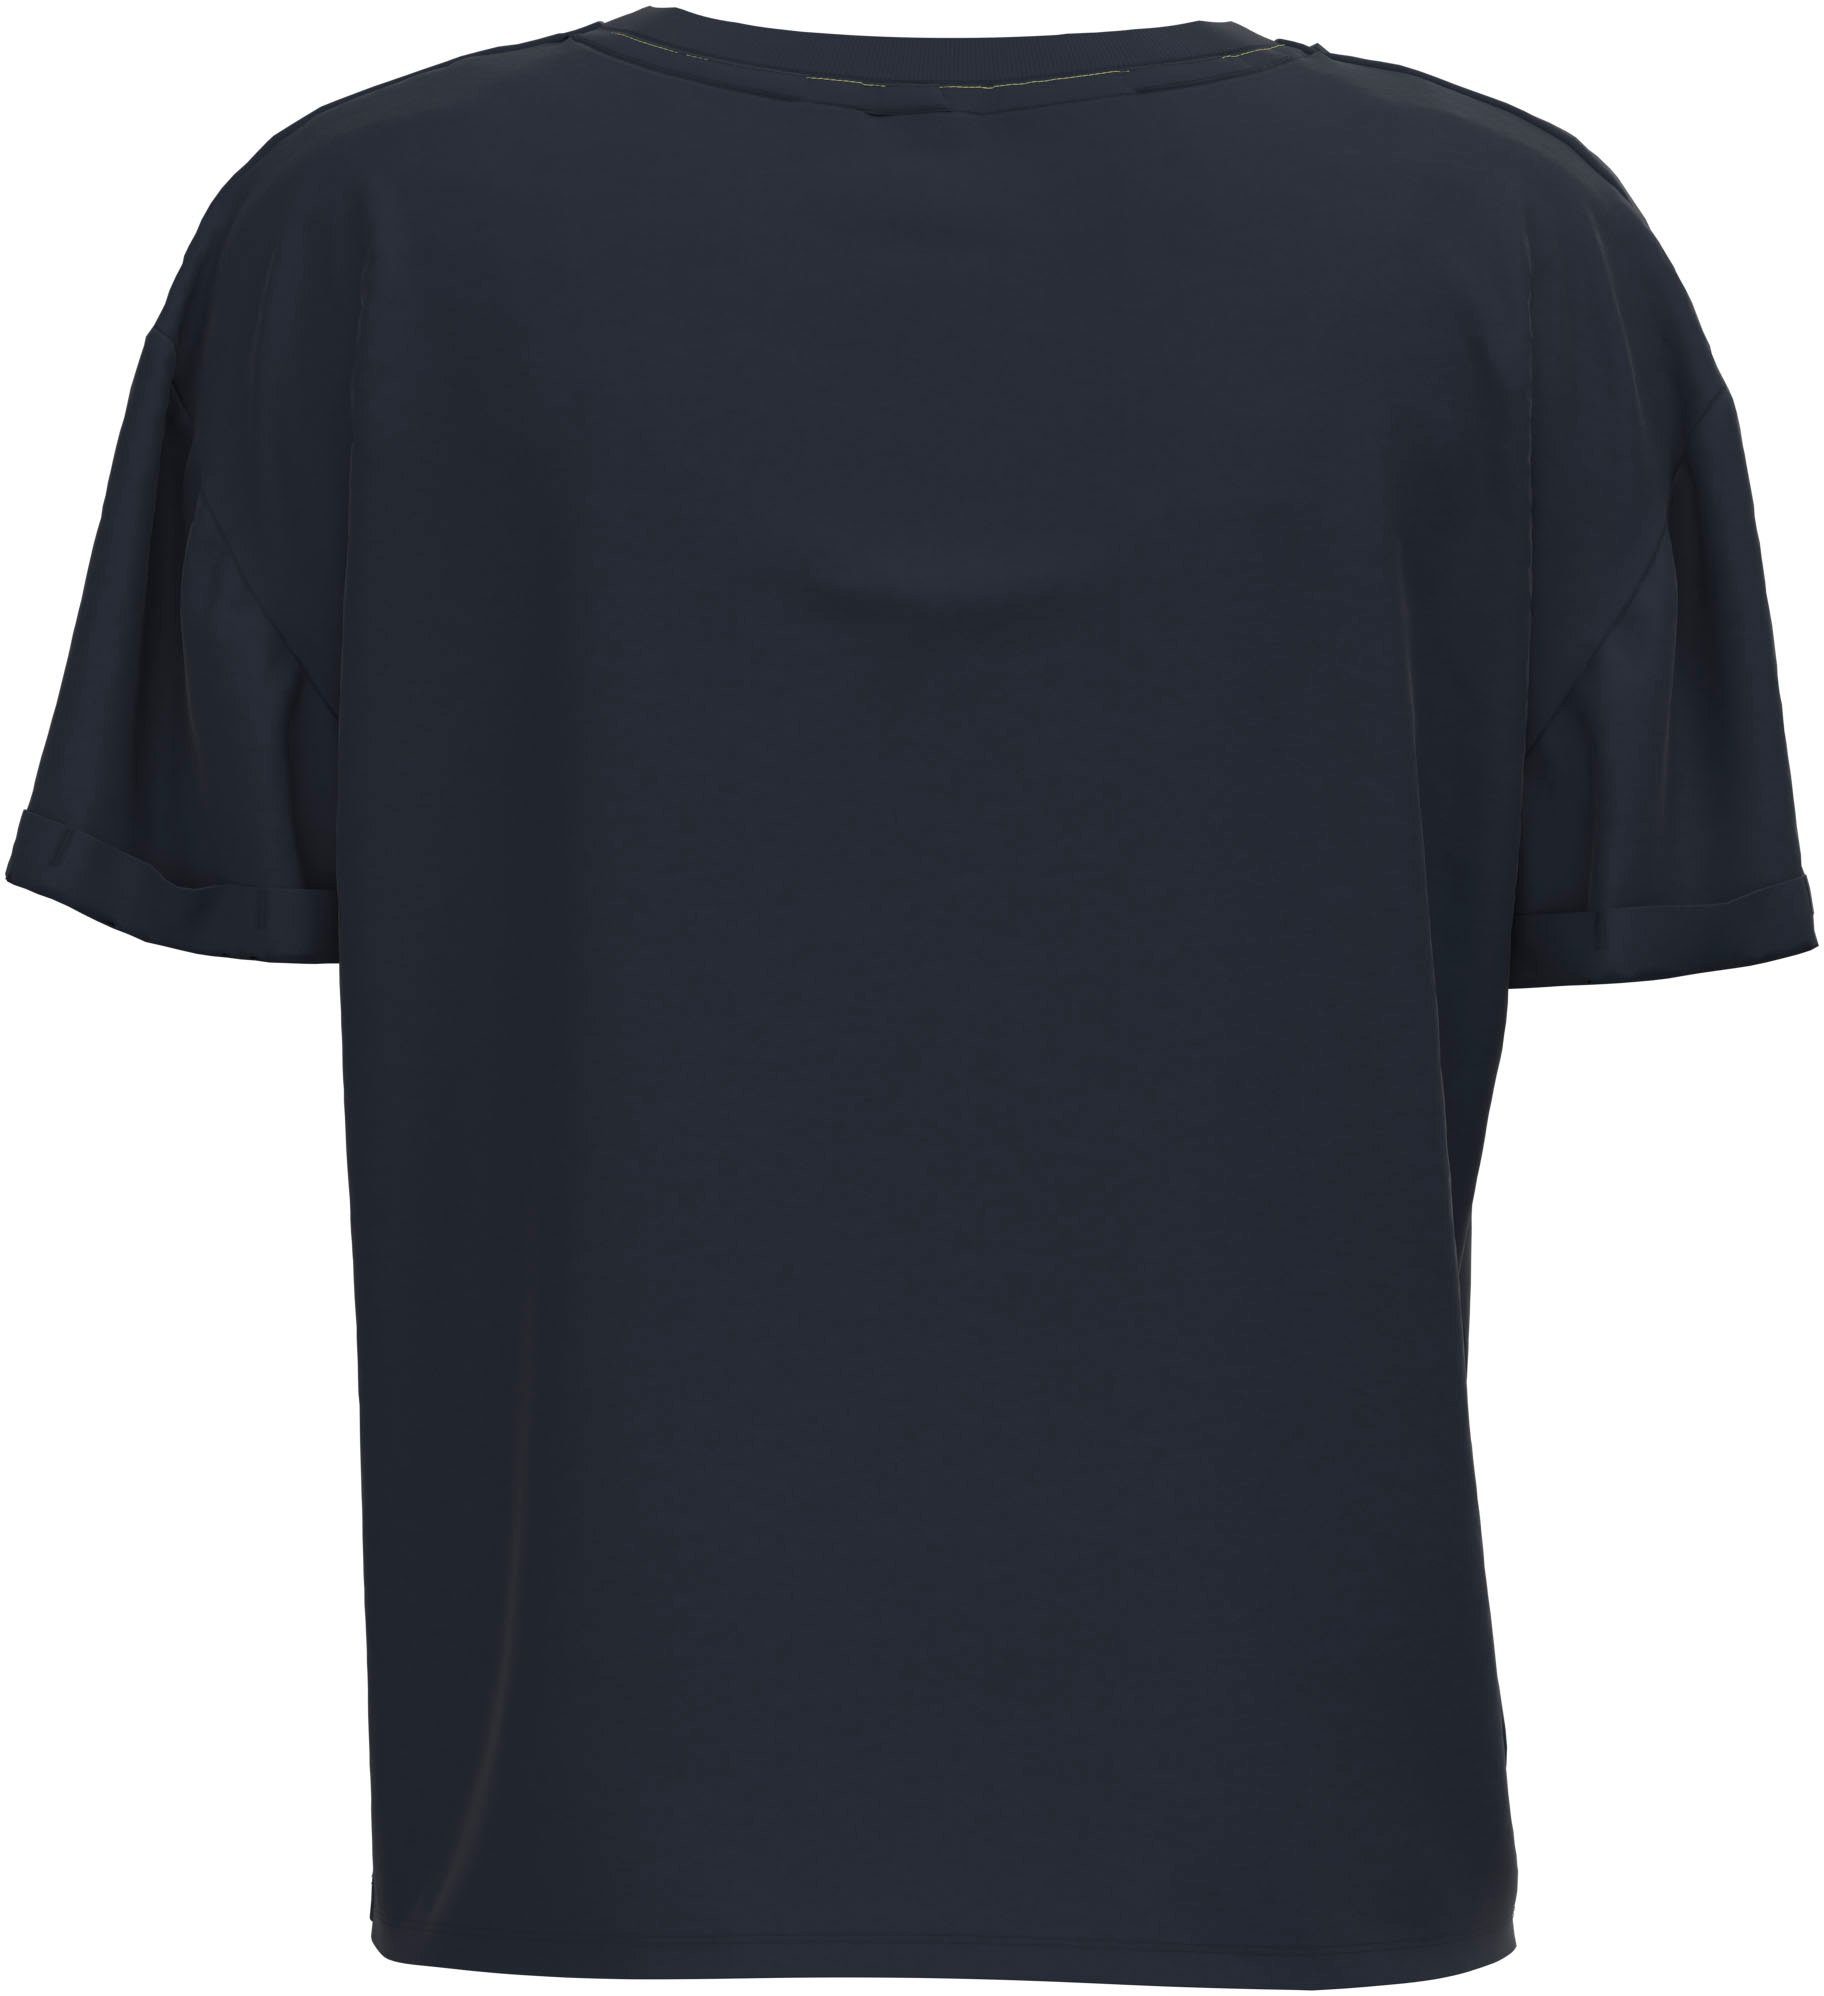 Pepe Jeans T-Shirt in oversized markentypischem mit tollem 594DULWICH Frontprint Passform und